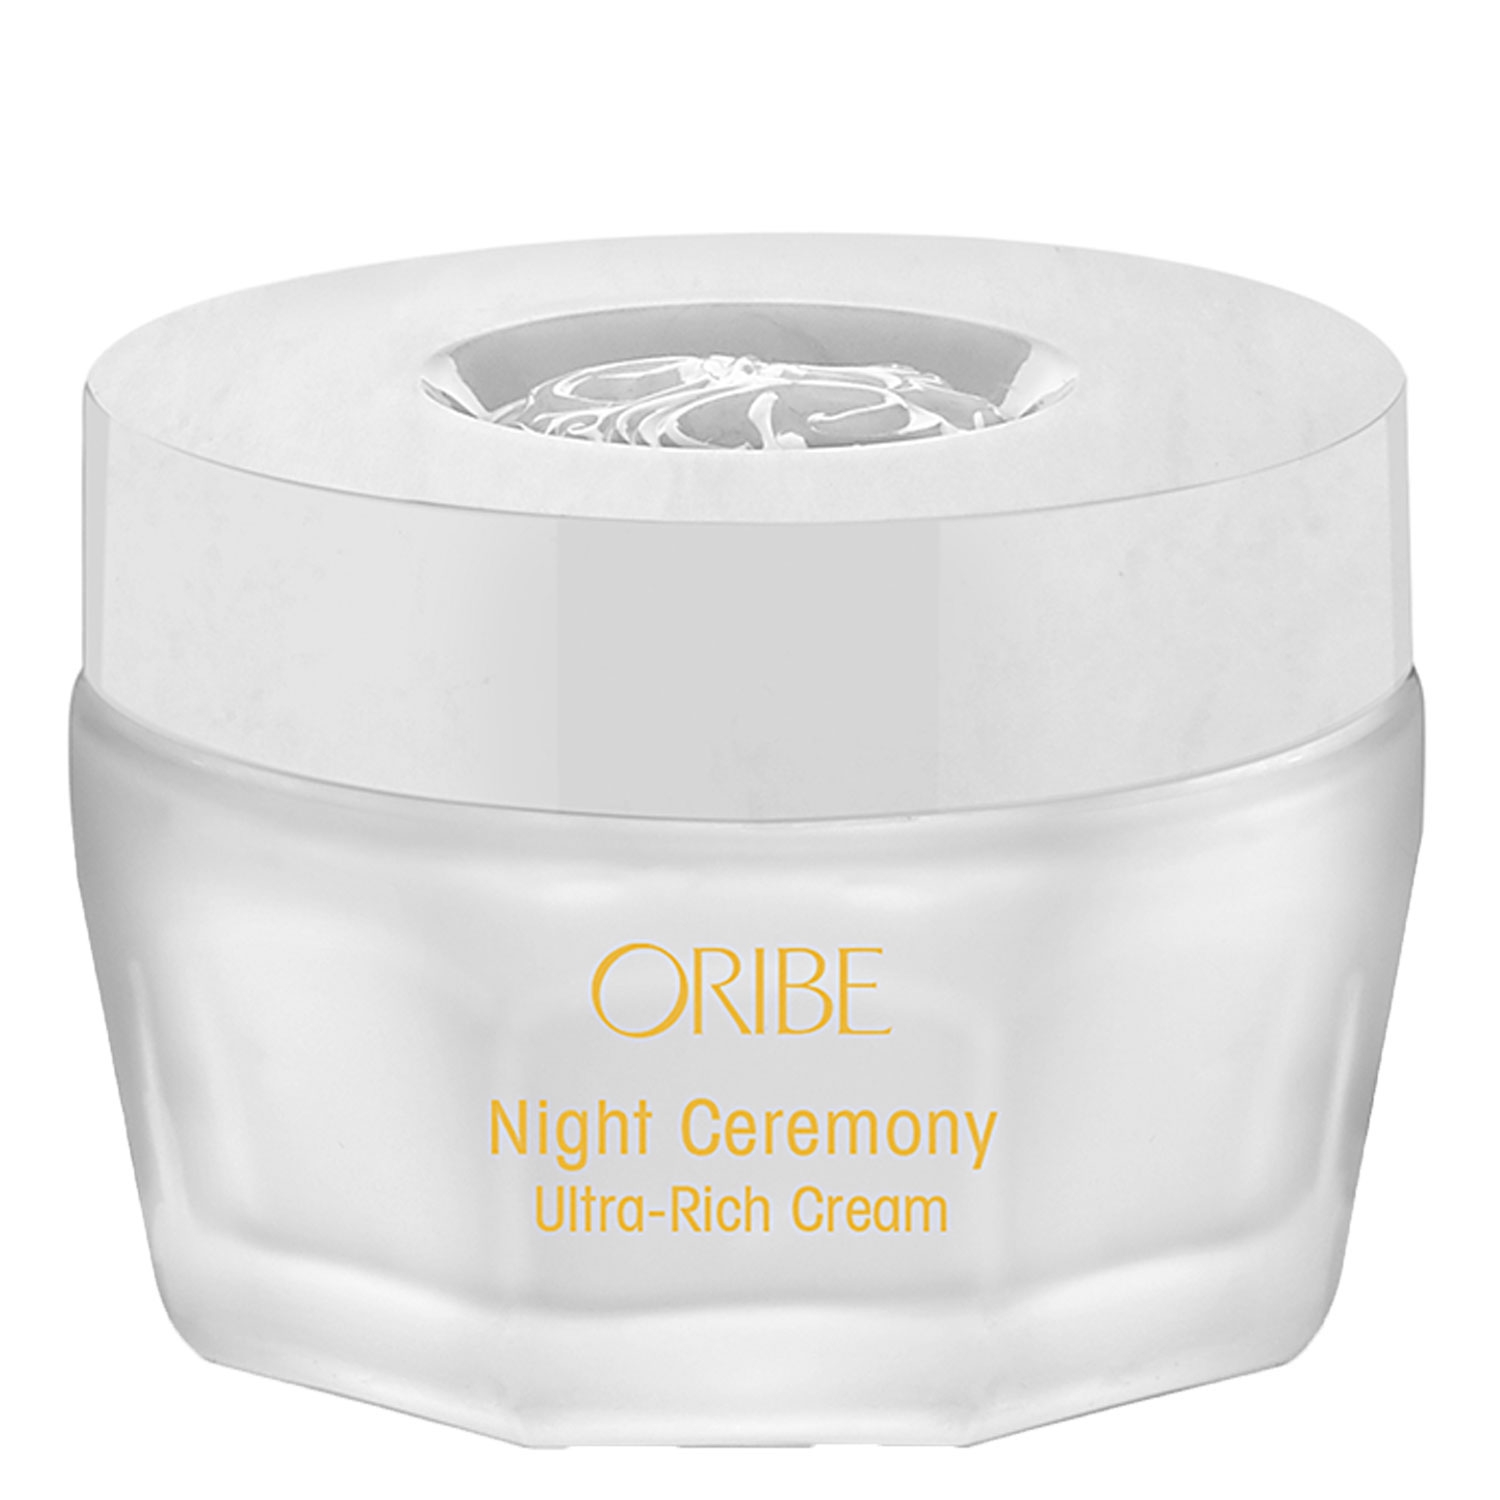 Produktbild von Oribe Skin - Night Ceremony Ultar-Rich Cream